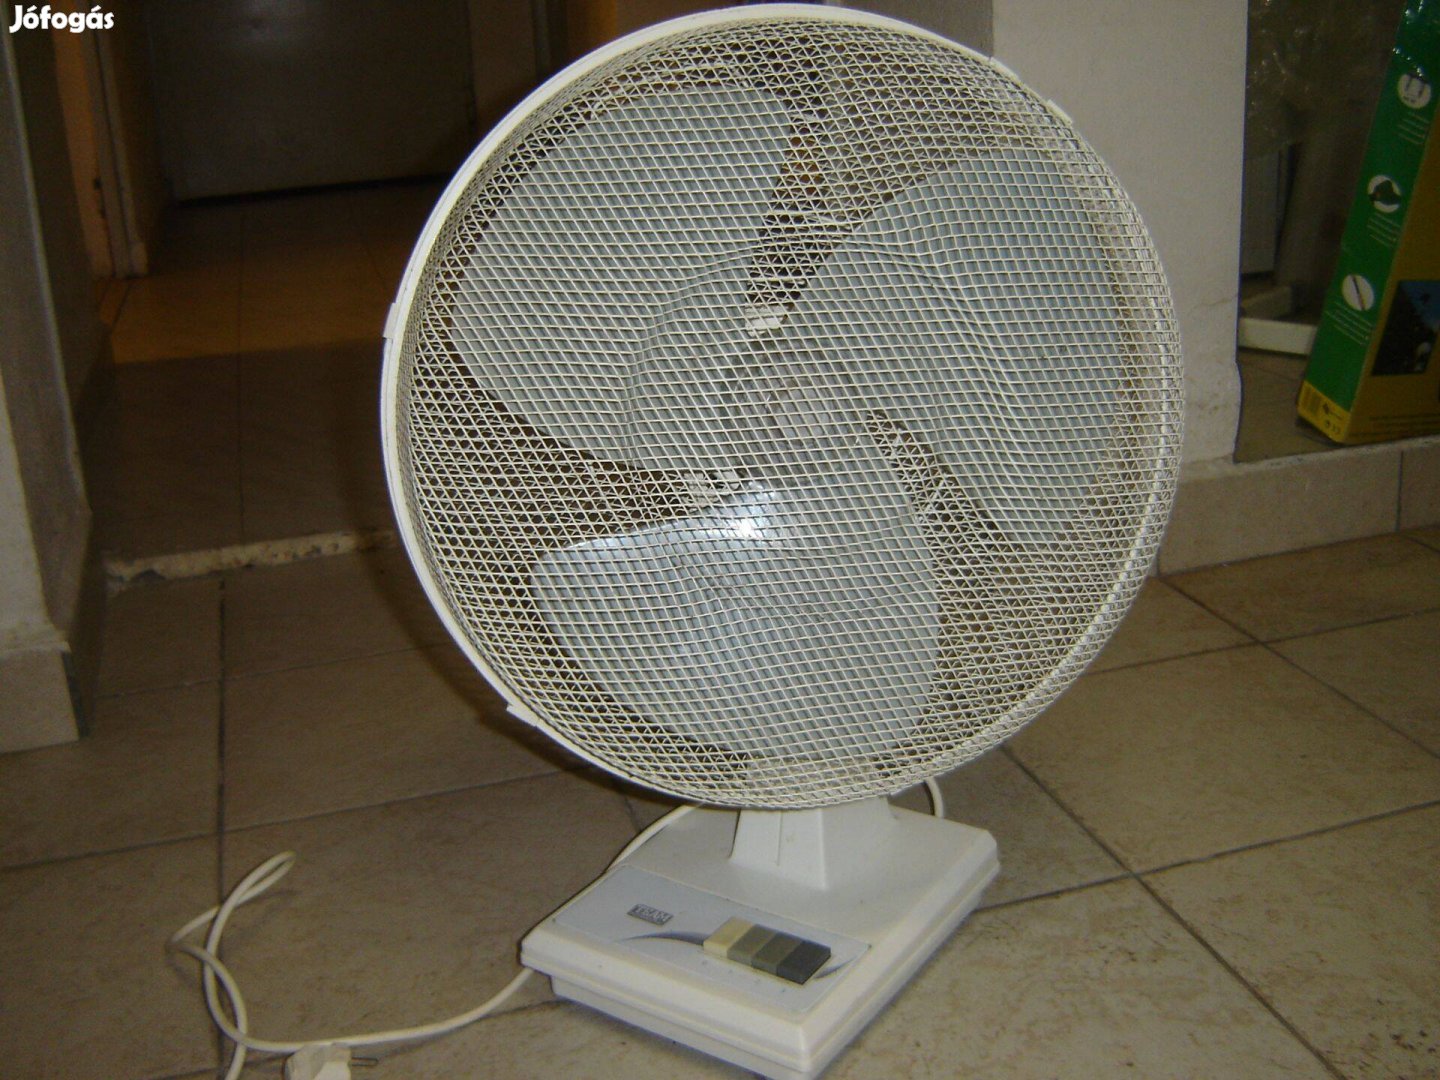 Asztali, német, több fokozatos nagy lapátos ventilátor